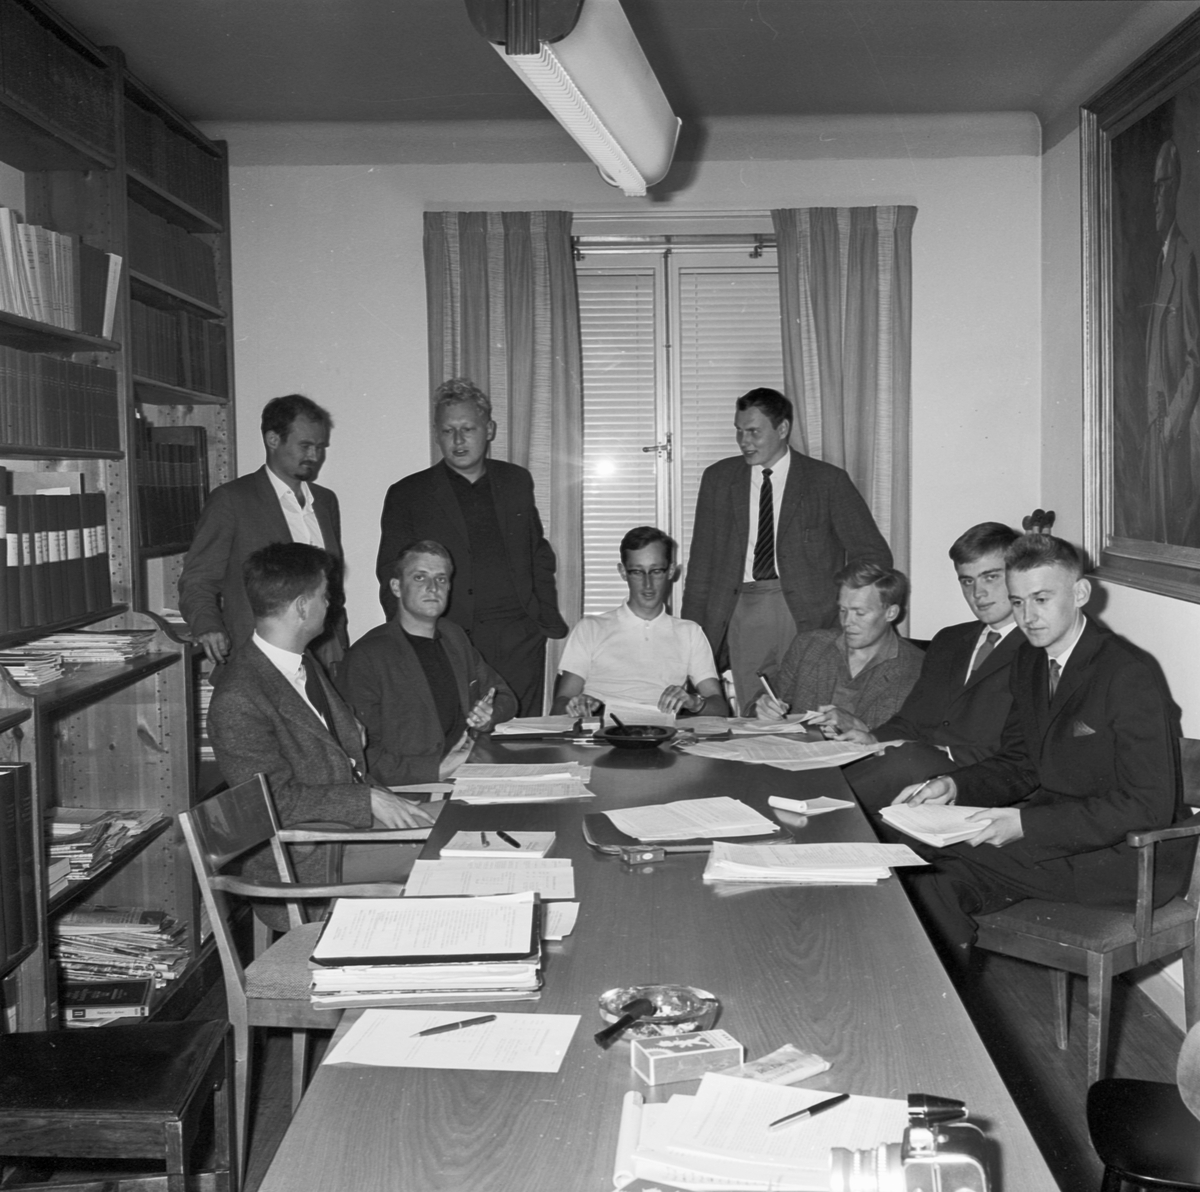 Studentkåren, "u-landsstipendiater får egen kurator i höst", Uppsala 1962